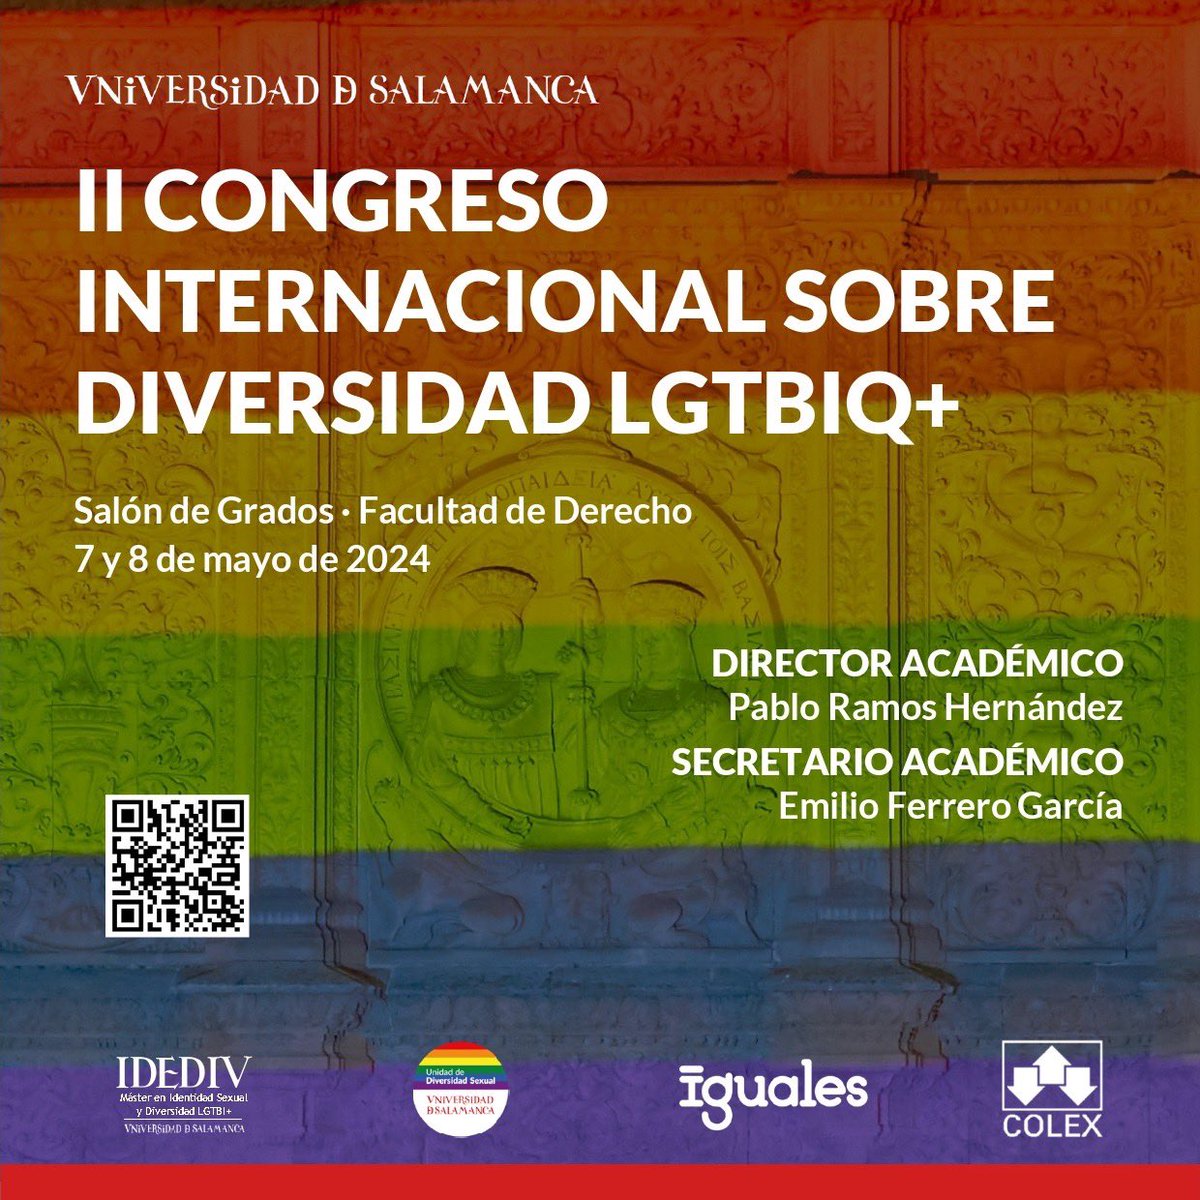 🏳️‍🌈Los próximos 7 y 8 de mayo celebraremos en Salamanca la II Edición del Congreso Internacional sobre Diversidad LGTBIQ+, en la Facultad de Derecho de la @usal 🔗 Link de inscripción gratuita: docs.google.com/forms/d/1FzF73… 📅 ¡No os lo perdáis! #LGTBI #Diversidad ❤️🧡💛💚💙💜